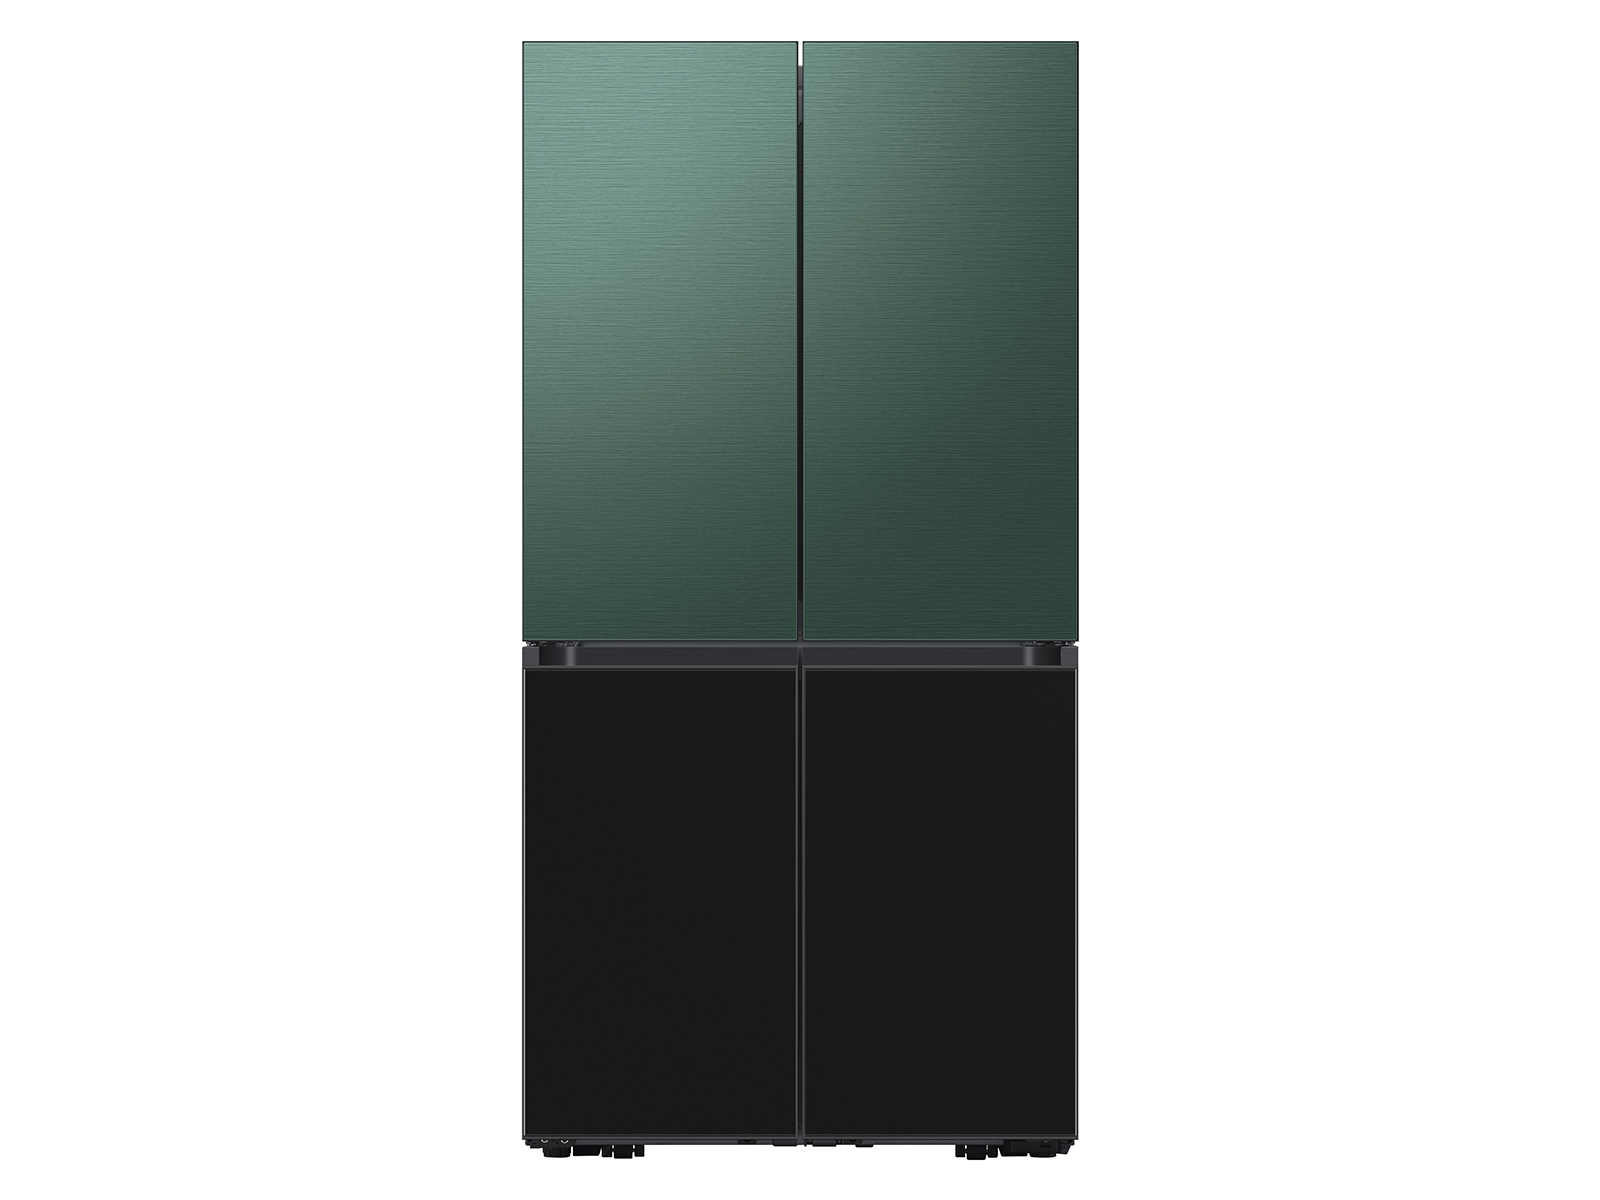 Thumbnail image of Bespoke 4-Door Flex™ Refrigerator Panel in Emerald Green Steel - Top Panel